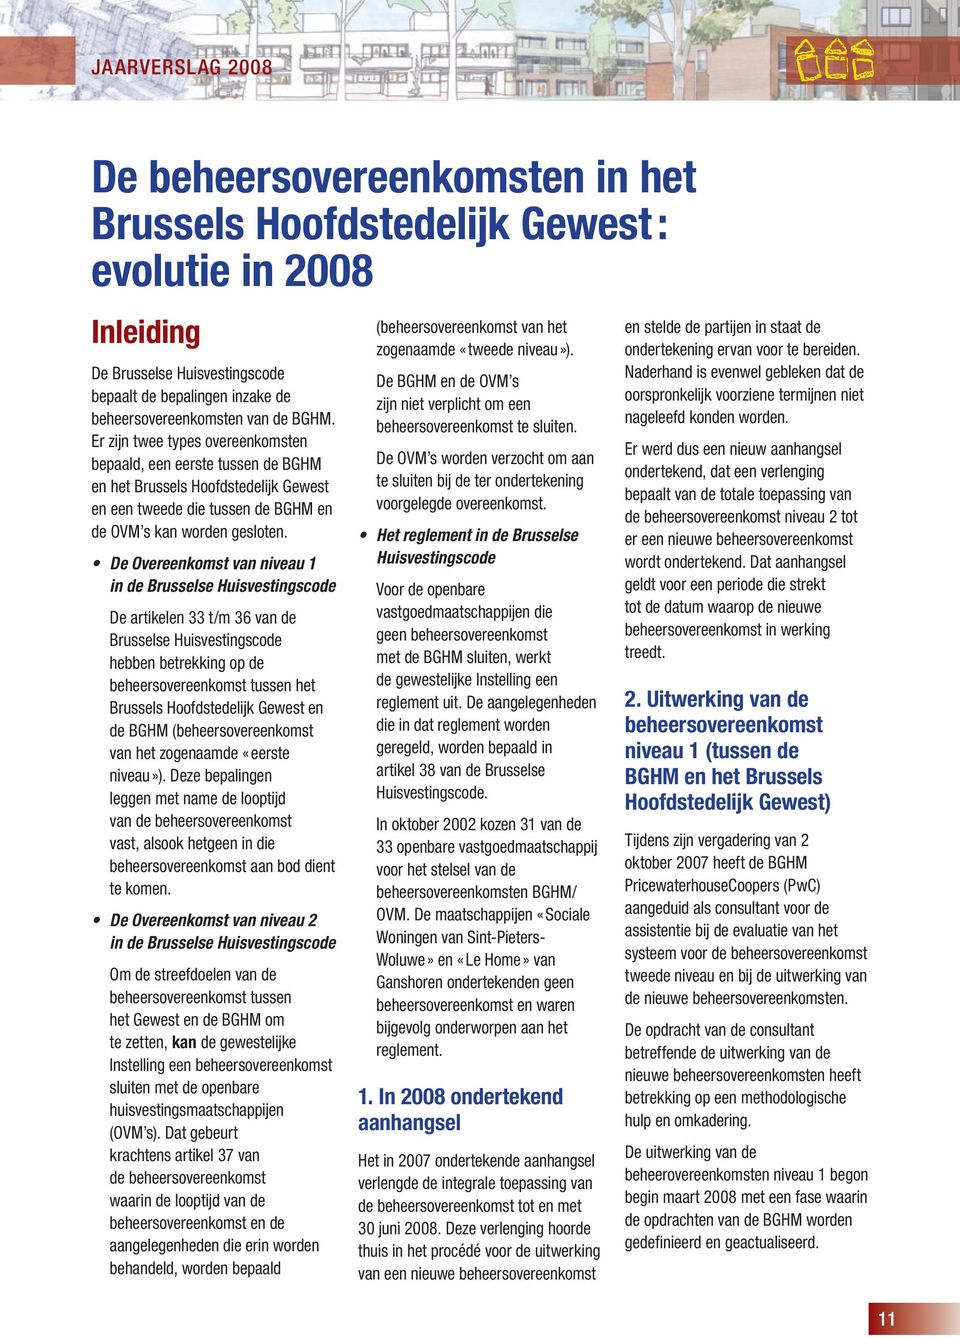 De Overeenkomst van niveau 1 in de Brusselse Huisvestingscode De artikelen 33 t/m 36 van de Brusselse Huisvestingscode hebben betrekking op de beheersovereenkomst tussen het Brussels Hoofdstedelijk